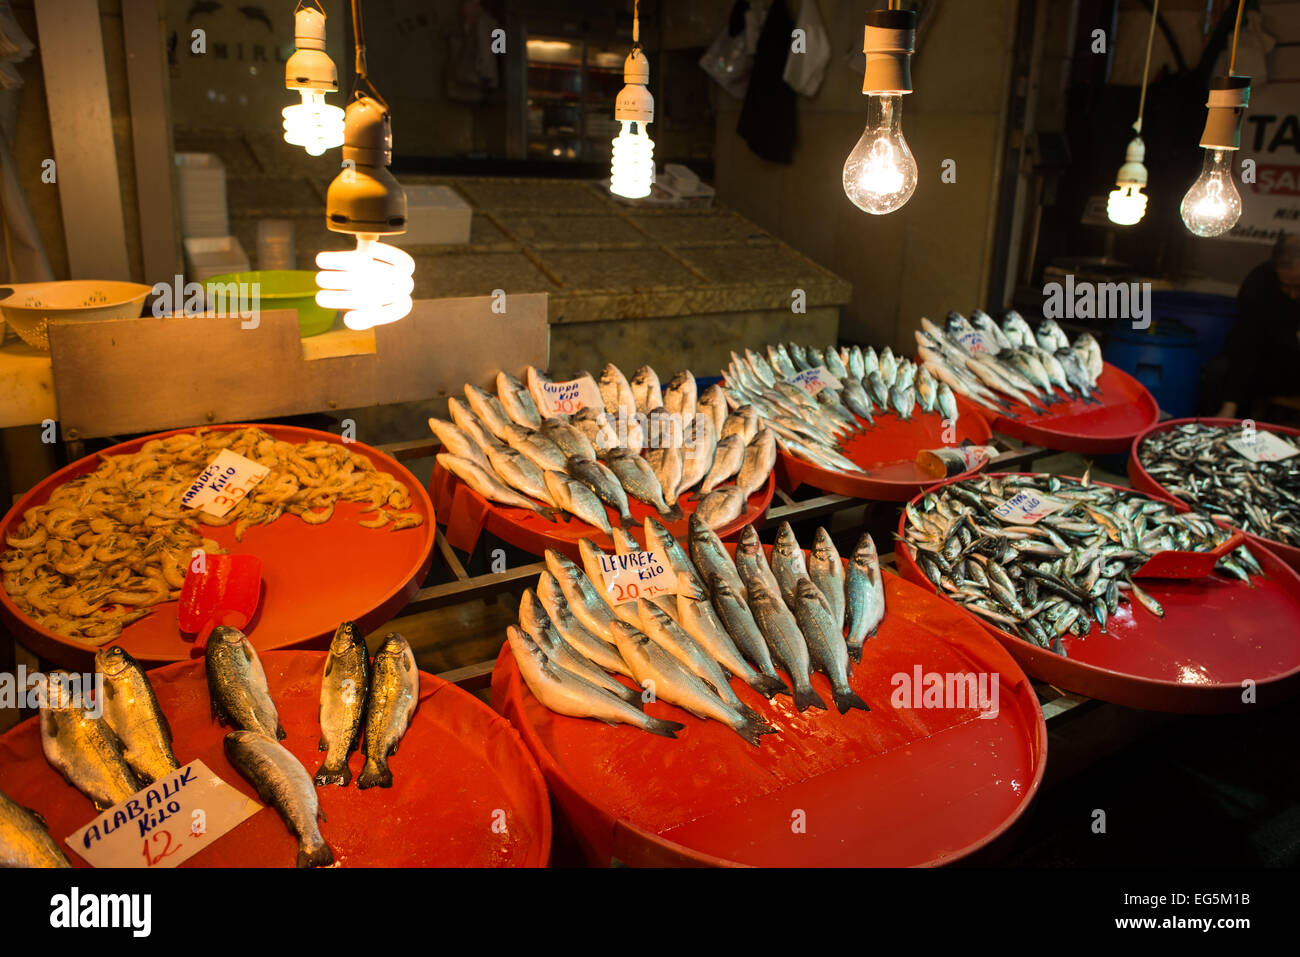 ISTANBUL, Türkei – Ein Geschäft, das Fisch auf Istanbuls Gewürzbasar verkauft. Der Gewürzbasar befindet sich im Eminonu-Viertel von Istanbul, neben der Galata-Brücke und ist einer der größten und berühmtesten Märkte der Stadt. Es ist auch bekannt als ägyptischer Basar. Dieser lebhafte Marktplatz wurde im 17. Jahrhundert gegründet und ist weiterhin ein wichtiger Bestandteil von Istanbuls Handels- und Gastronomiekultur, mit seinen reichen Aromen und lebhaften Farben, die Einheimische und Touristen gleichermaßen begeistern. Stockfoto